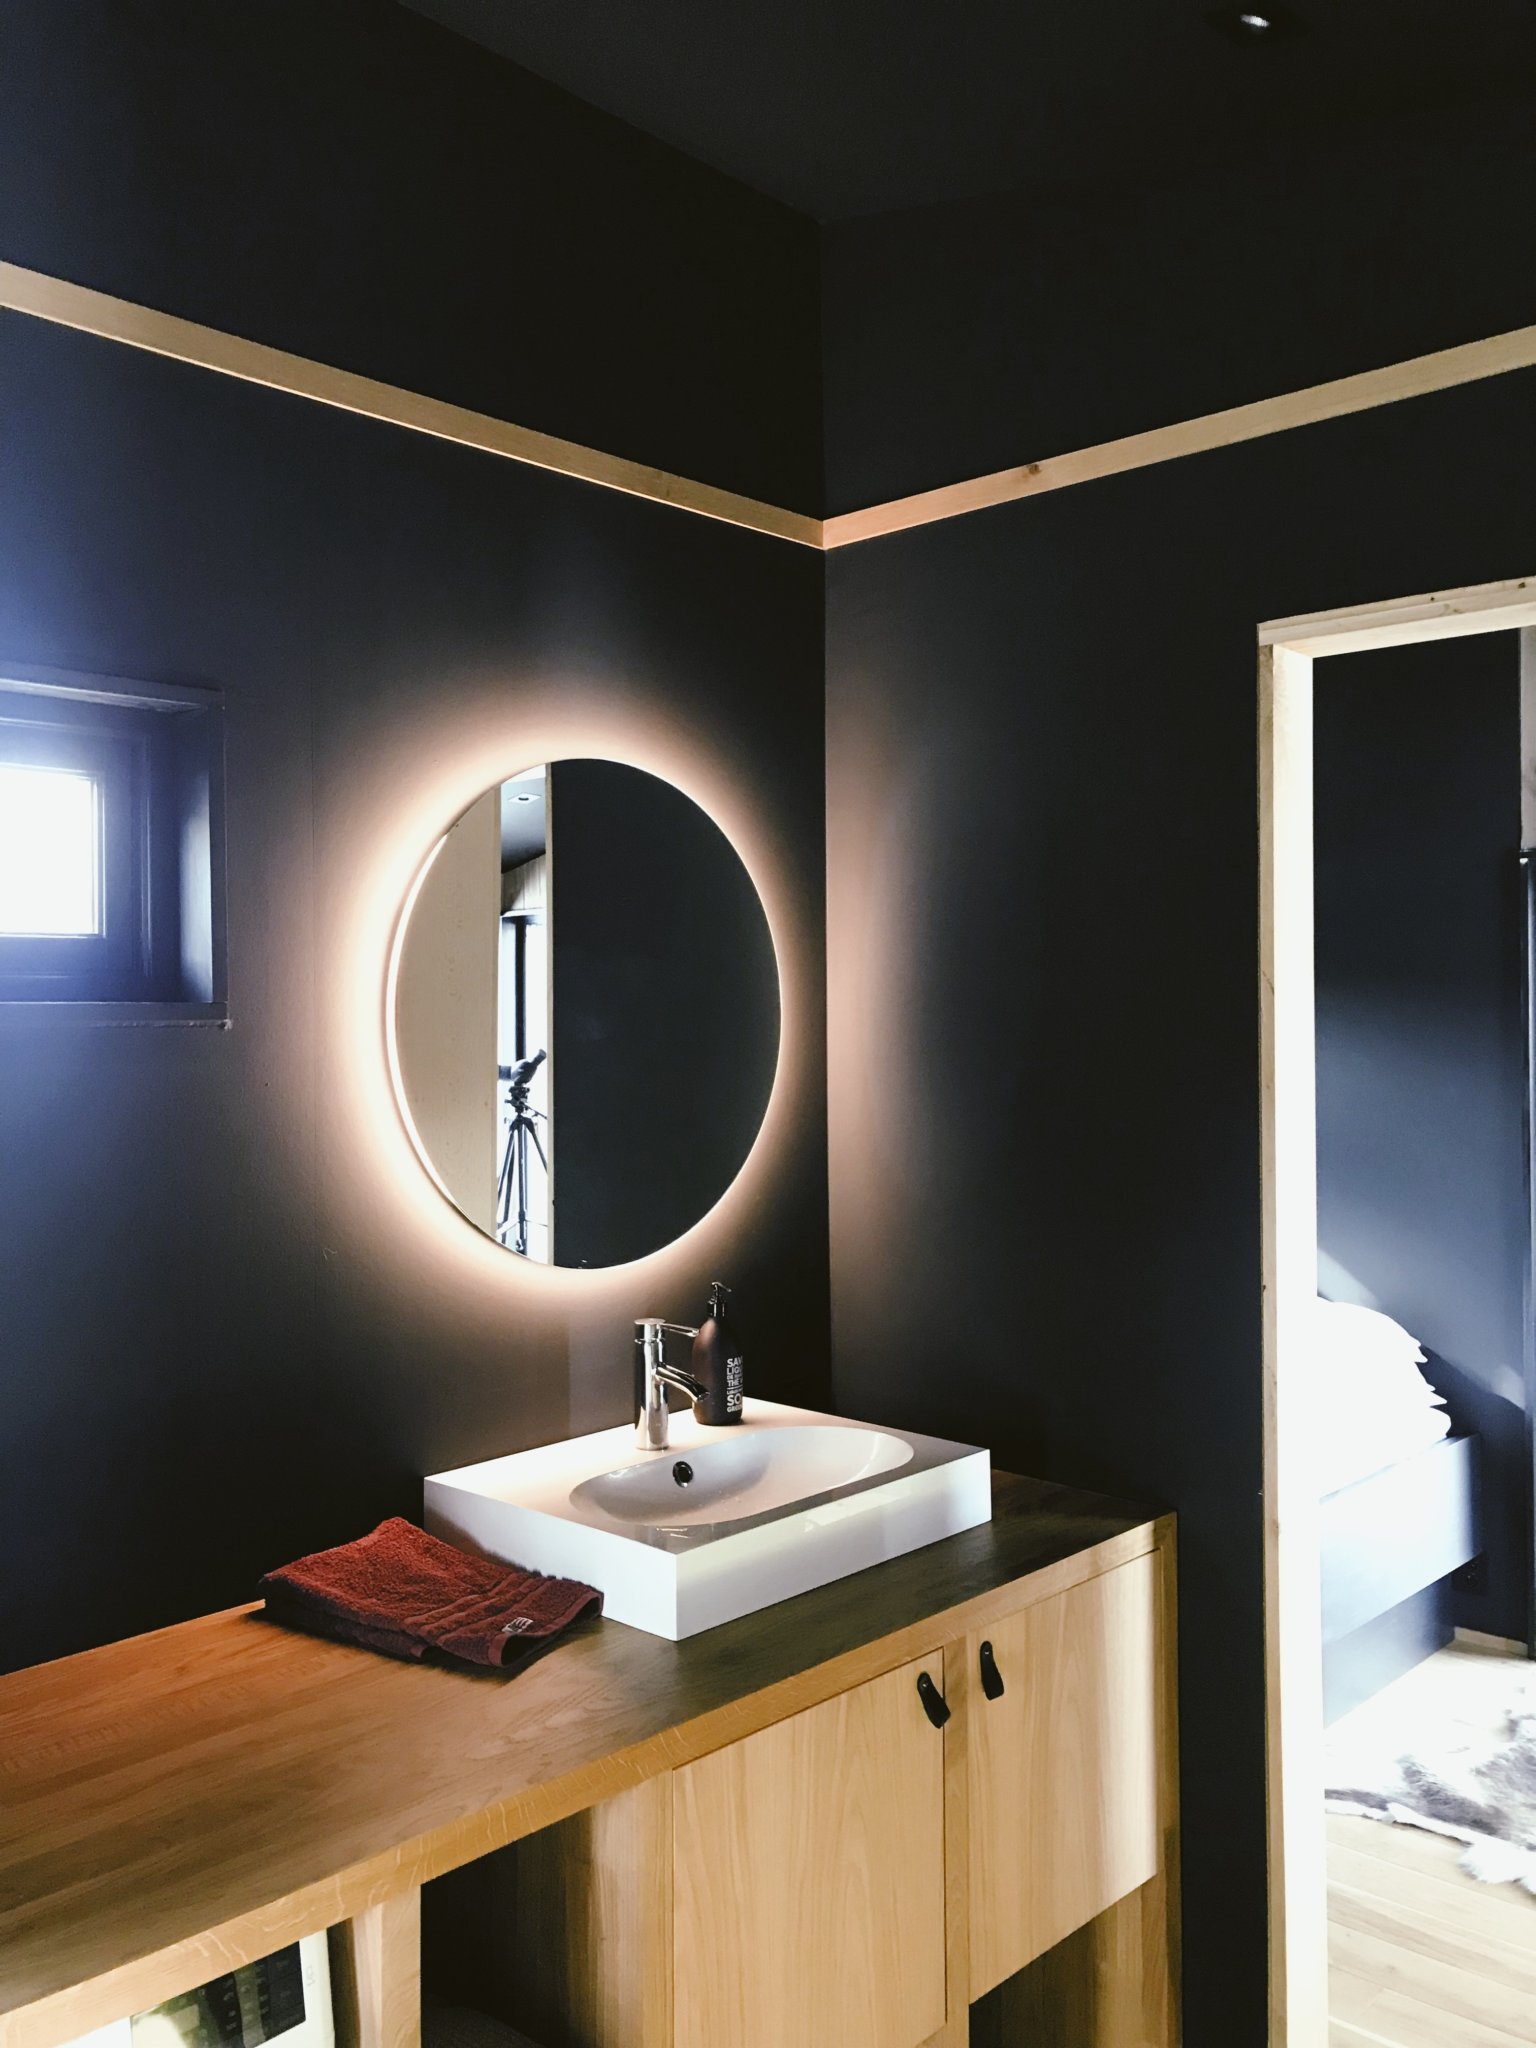 hình ảnh một góc phòng tắm với tường sơn màu xanh than, gương tròn kết hợp đèn LED, bồn rửa sứ trắng hình chữ nhật